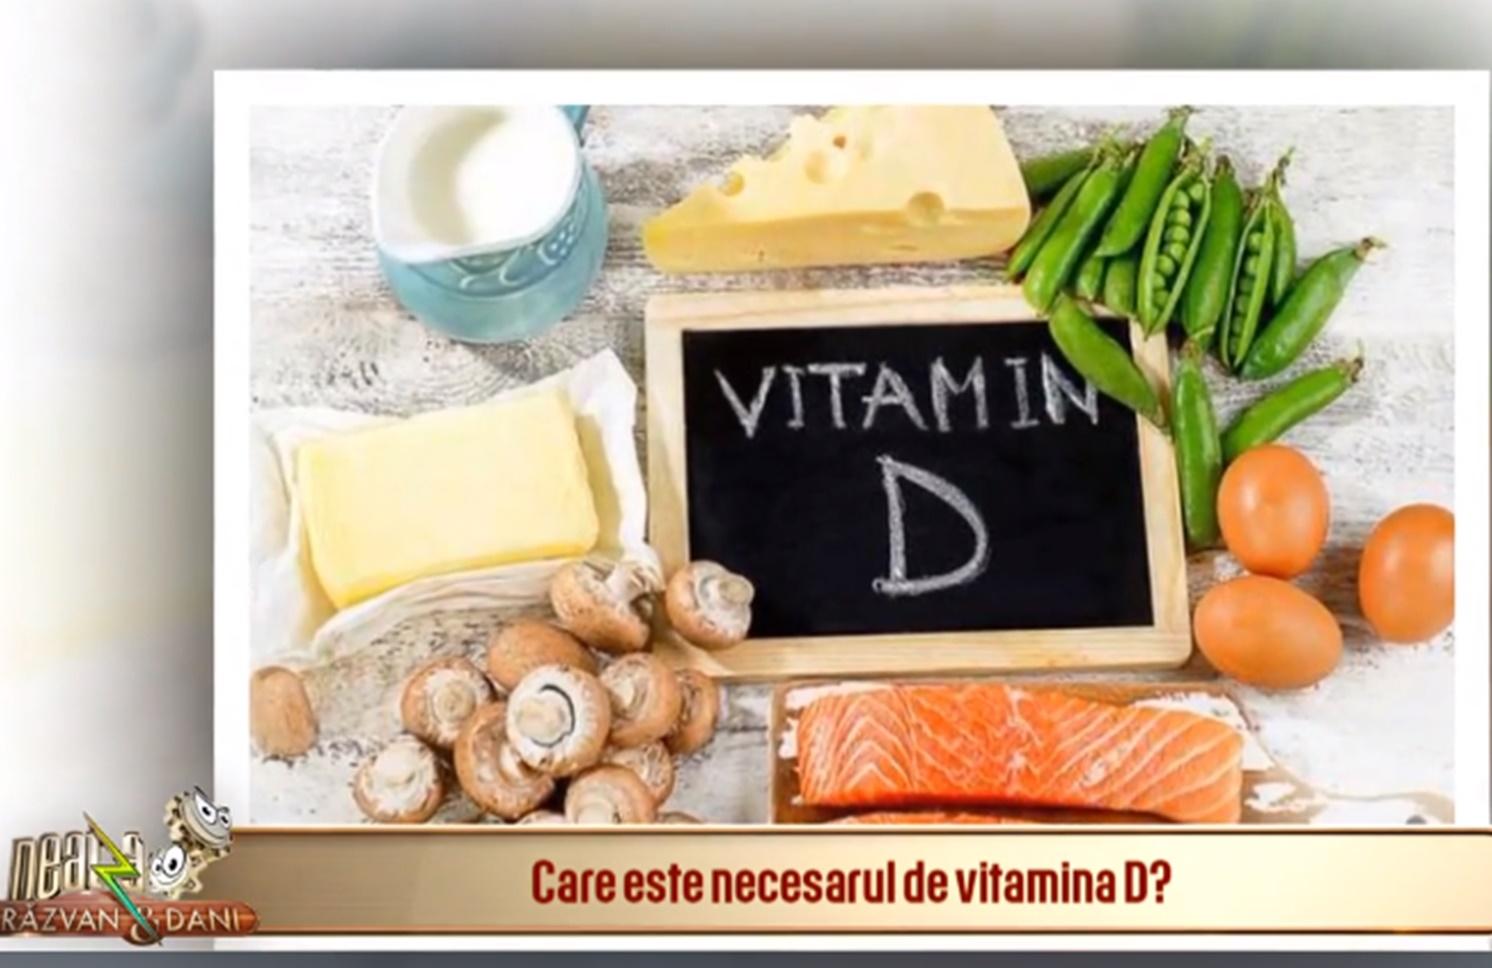 Vitamina D, tot ce trebuie să știm despre rolul și importanța ei asupra organismului primăvara